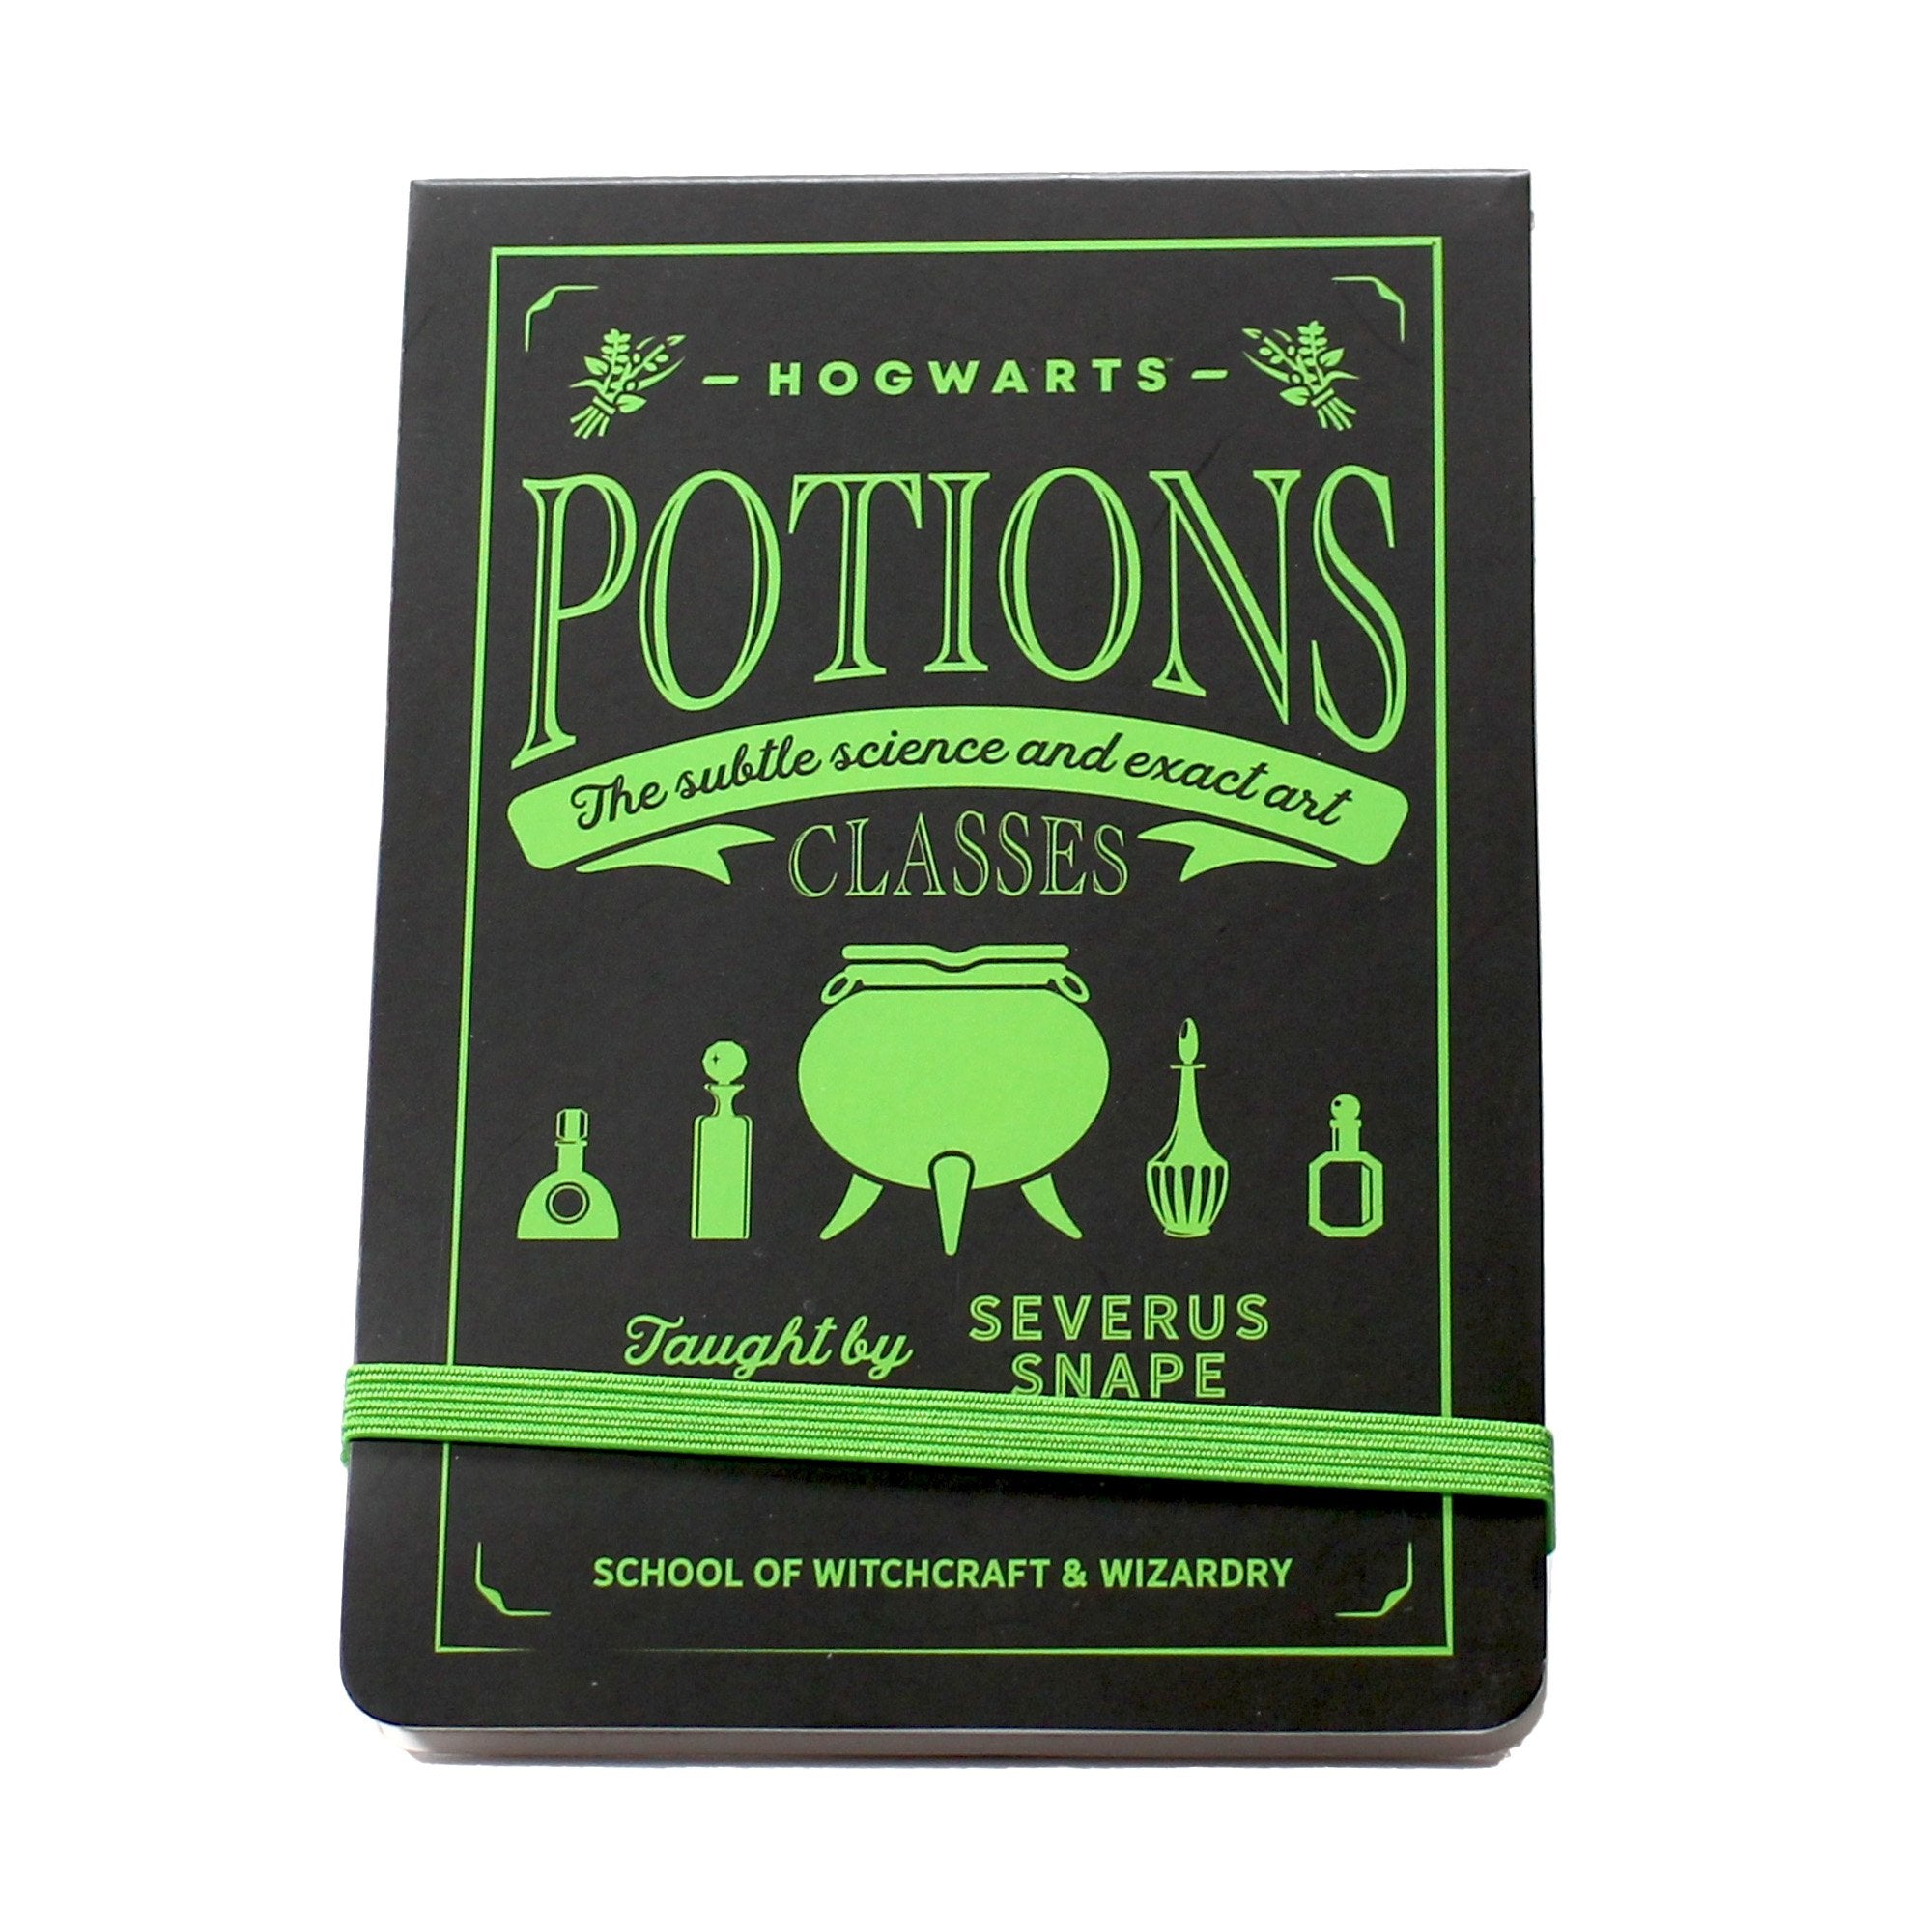 Pocket Notebook - Harry Potter (Potions)